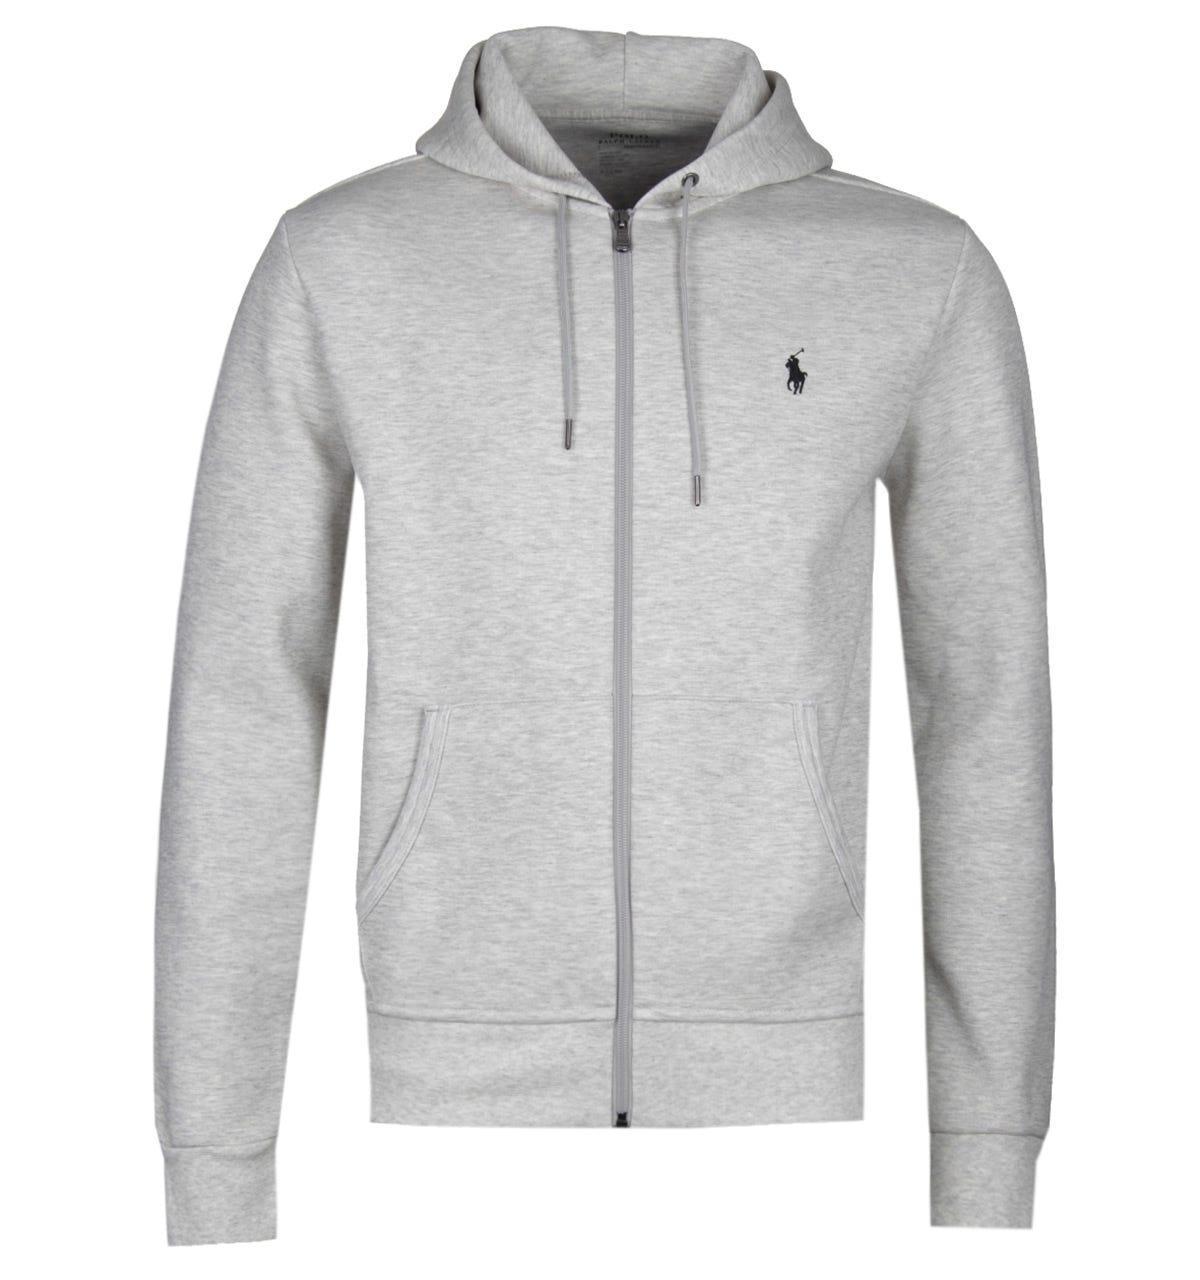 Polo Ralph Lauren Tech Fleece Grey Zip Hoodie in Gray for Men - Lyst